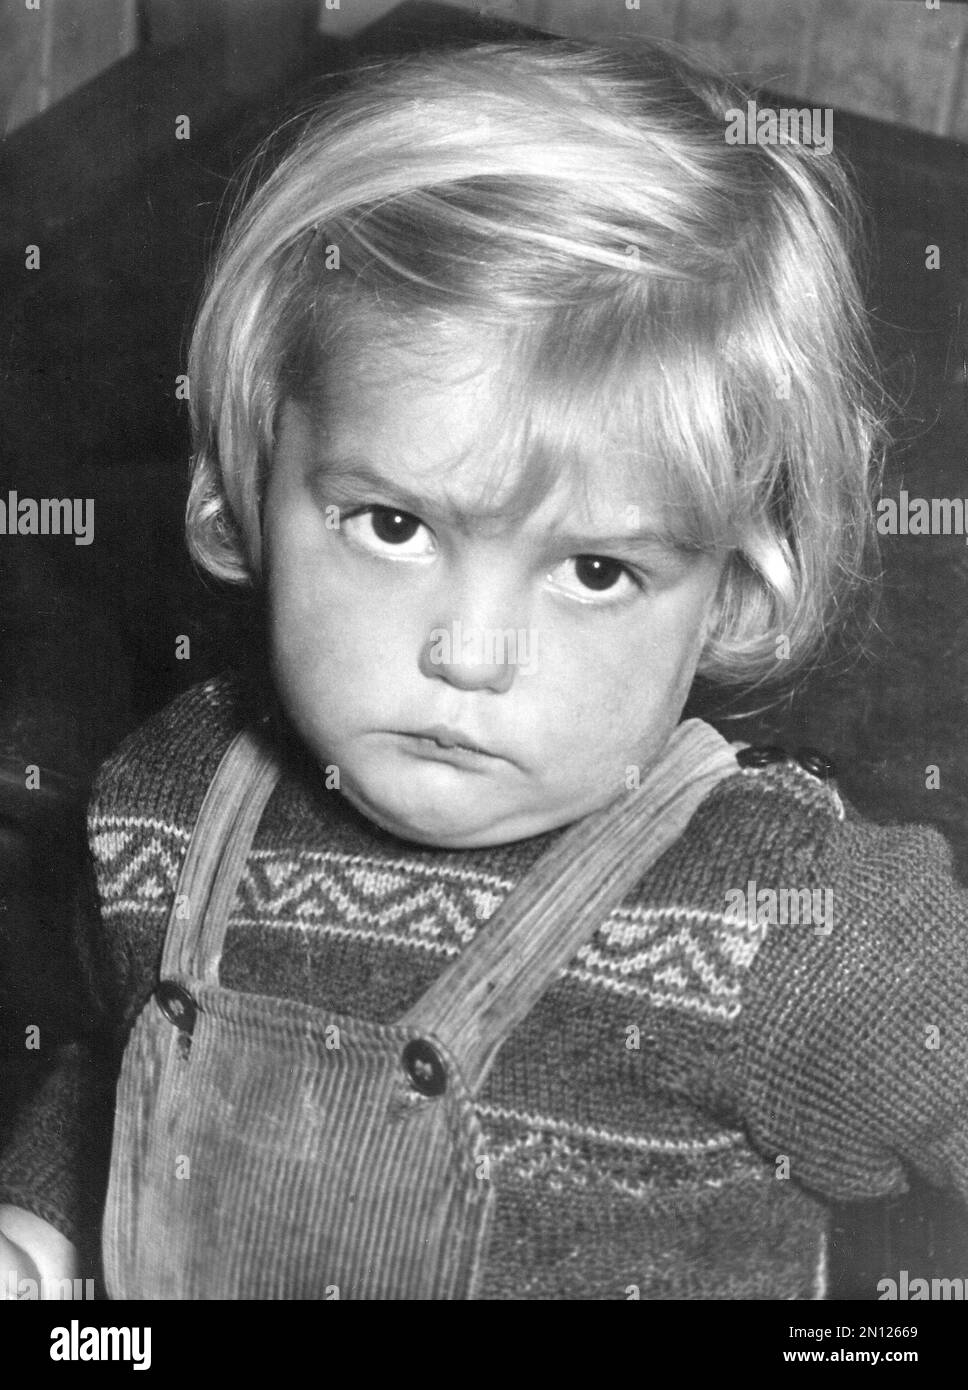 L'enfant de la maternelle a peur des photographes avec flash, 1955 Banque D'Images